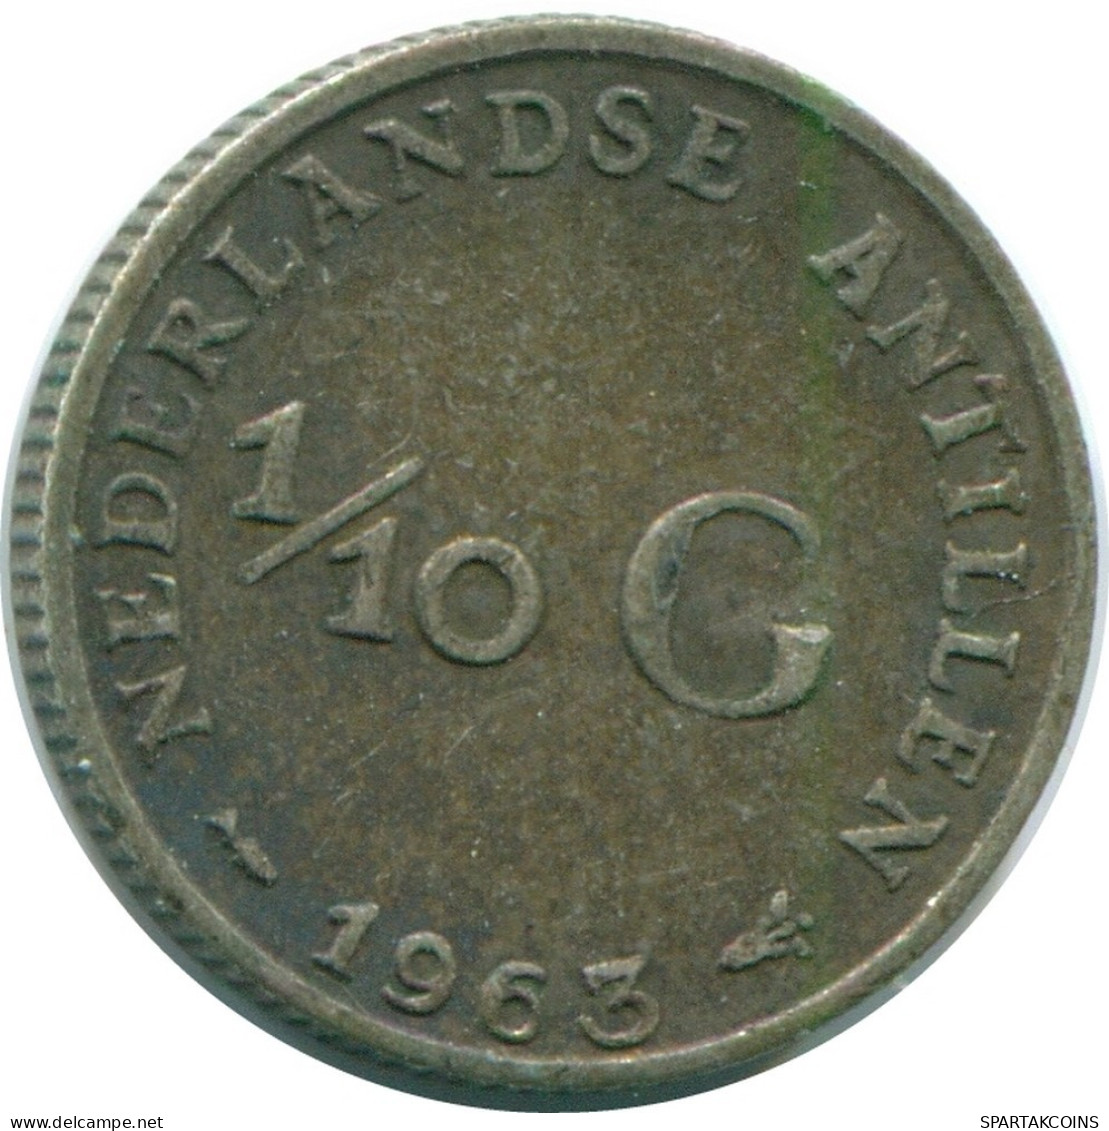 1/10 GULDEN 1963 NIEDERLÄNDISCHE ANTILLEN SILBER Koloniale Münze #NL12504.3.D.A - Niederländische Antillen